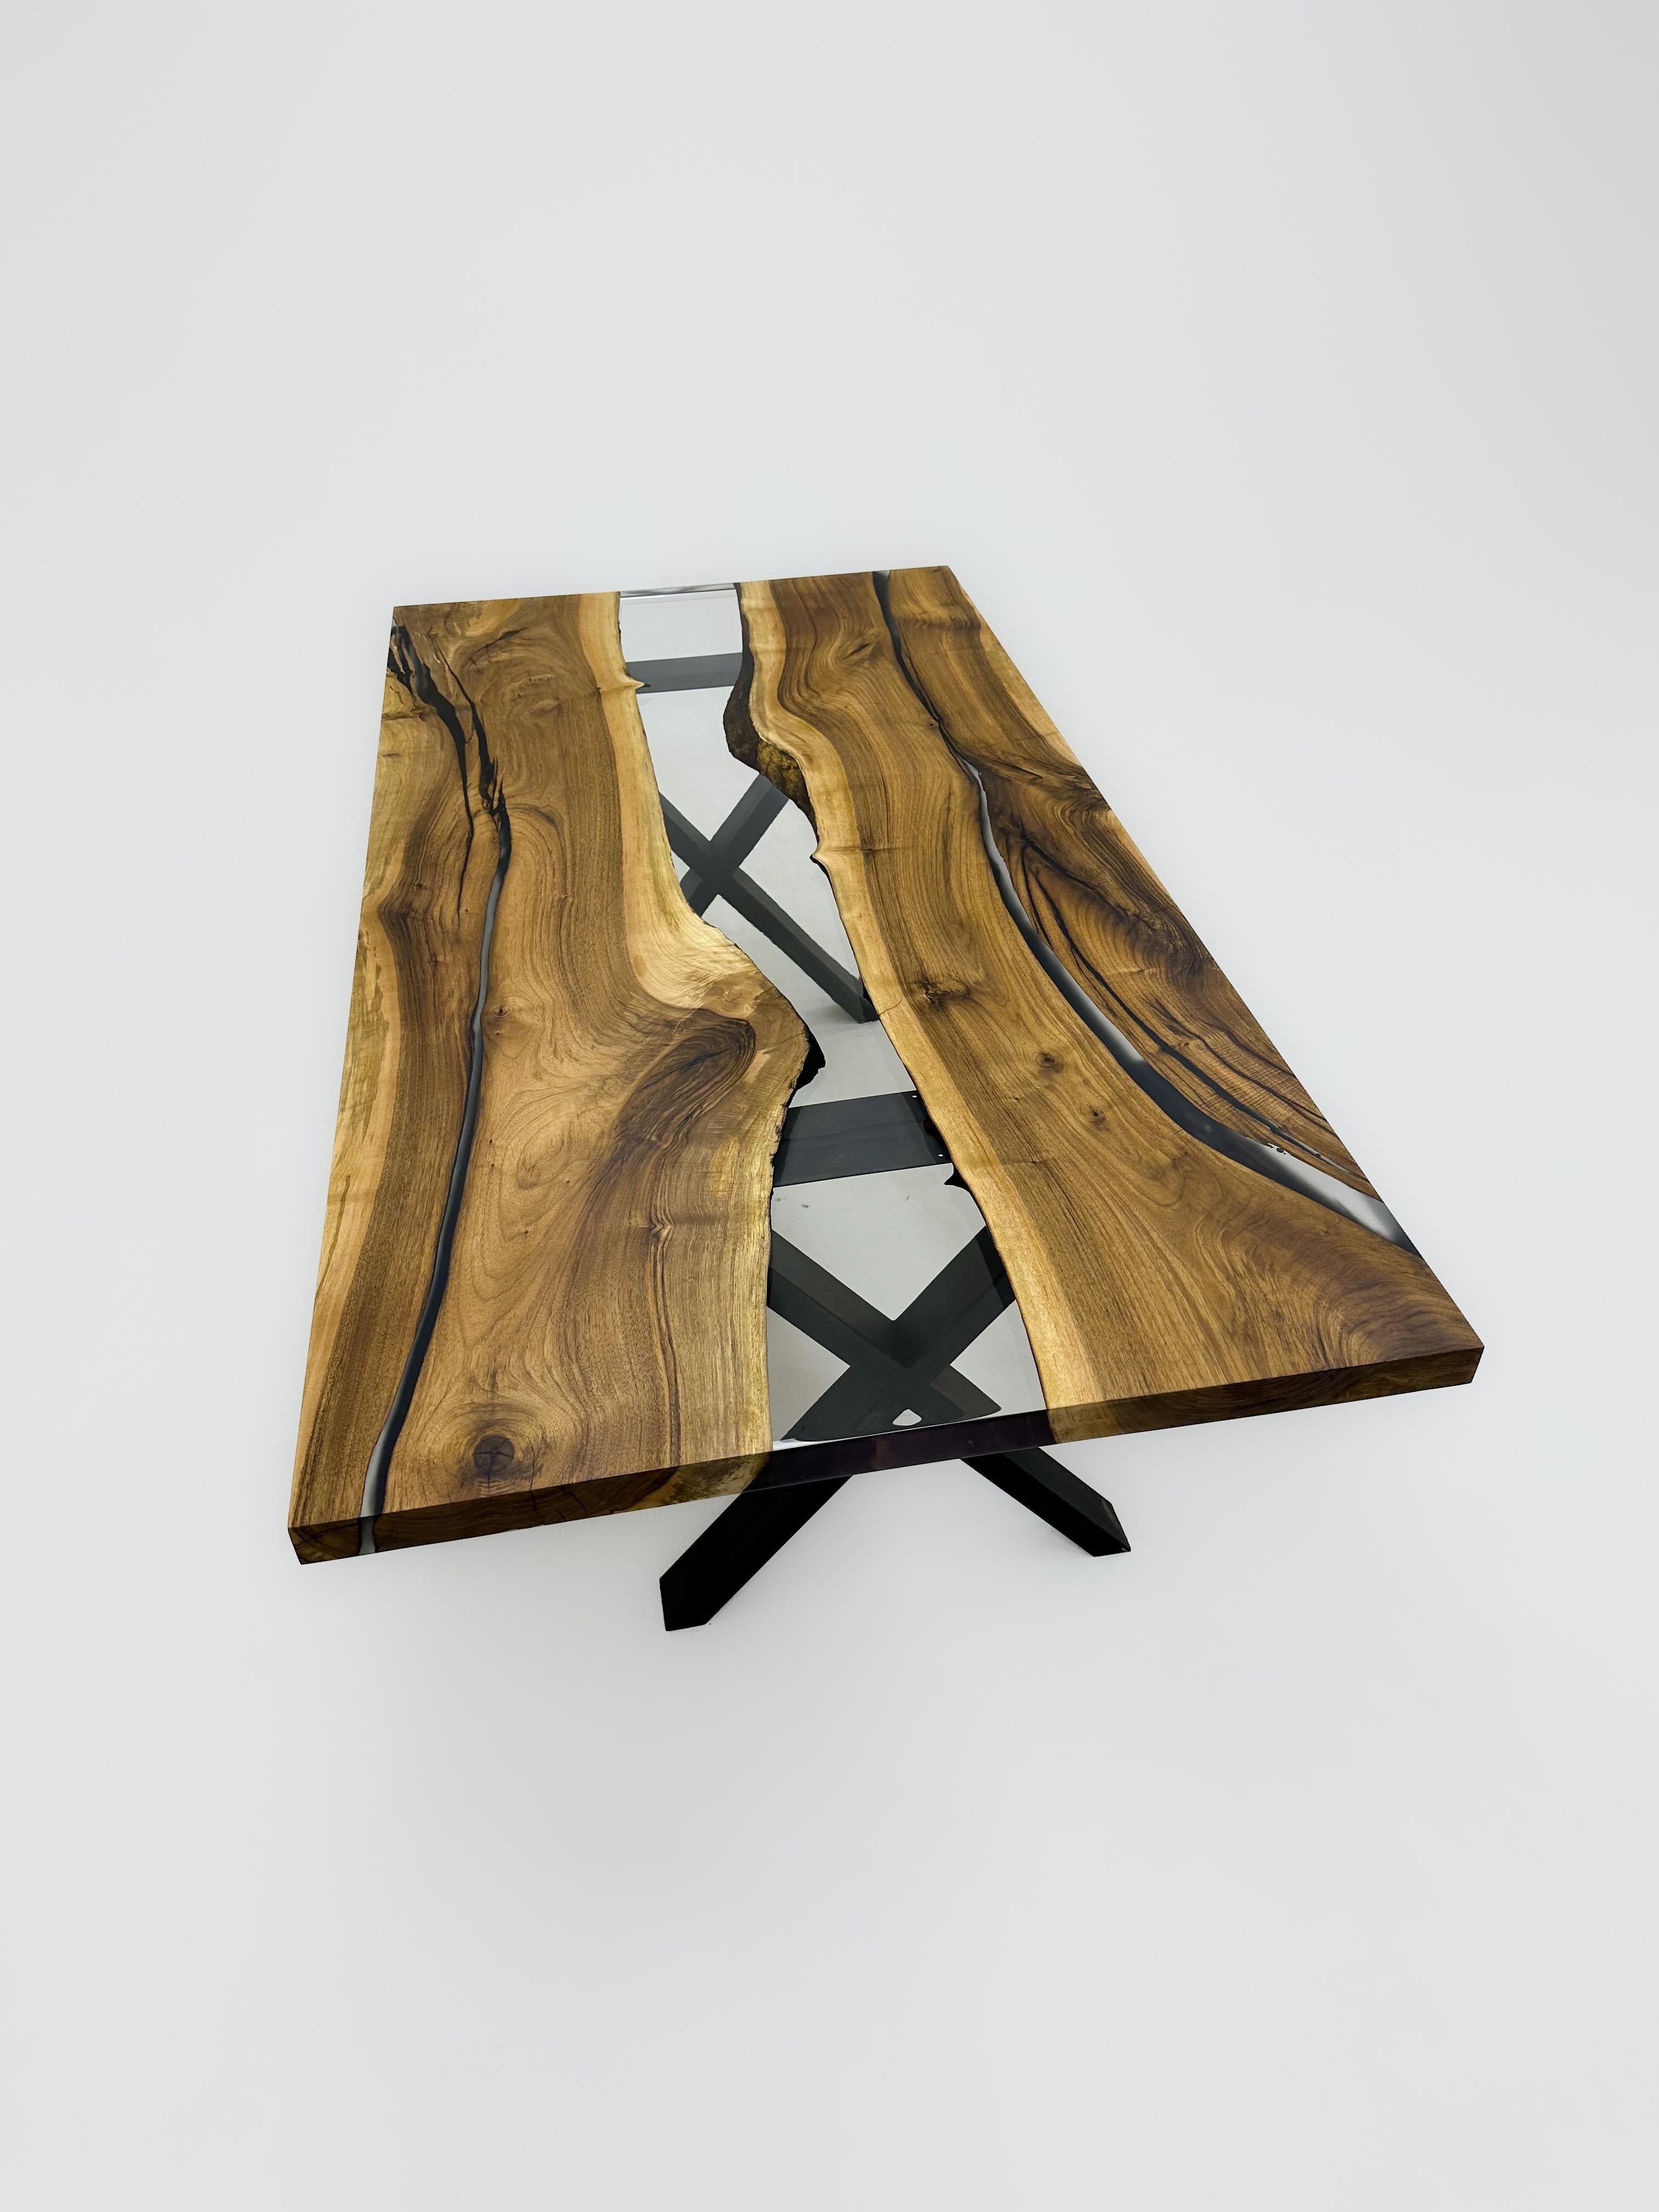 Individueller Esstisch aus klarem Epoxidharz 

Dieser Tisch ist aus 500 Jahre altem Walnussholz gefertigt. Die Maserung und die Struktur des Holzes beschreiben, wie ein natürliches Walnussholz aussieht.
Er kann als Esstisch oder als Konferenztisch